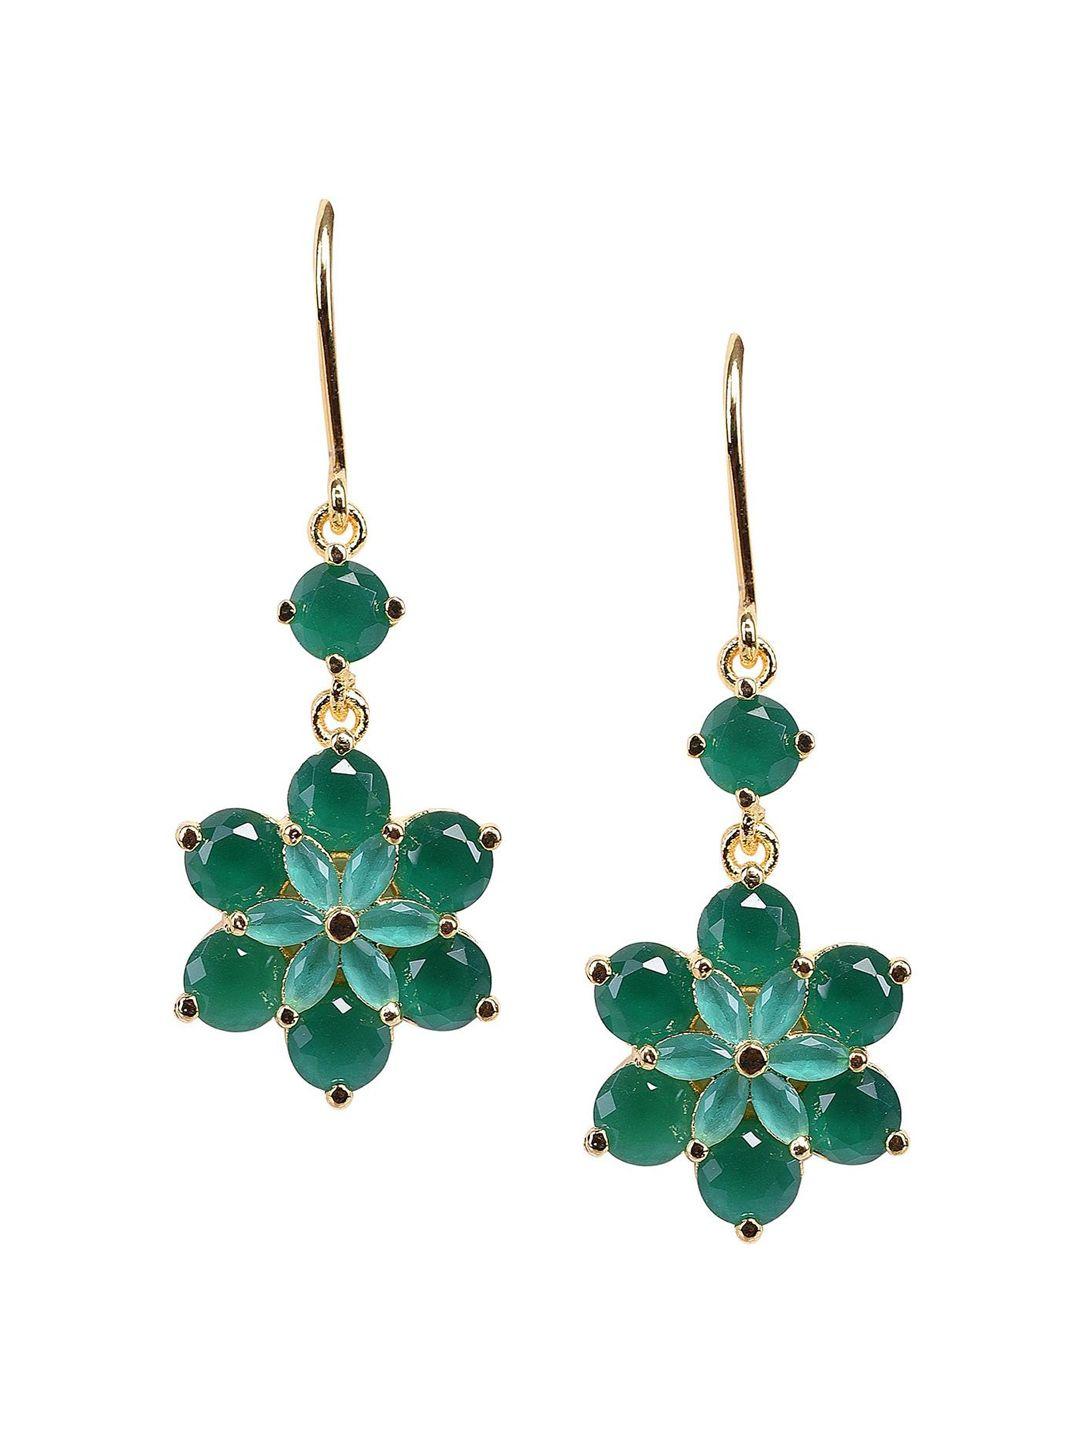 ratnavali jewels gold-plated teardrop shaped drop earrings